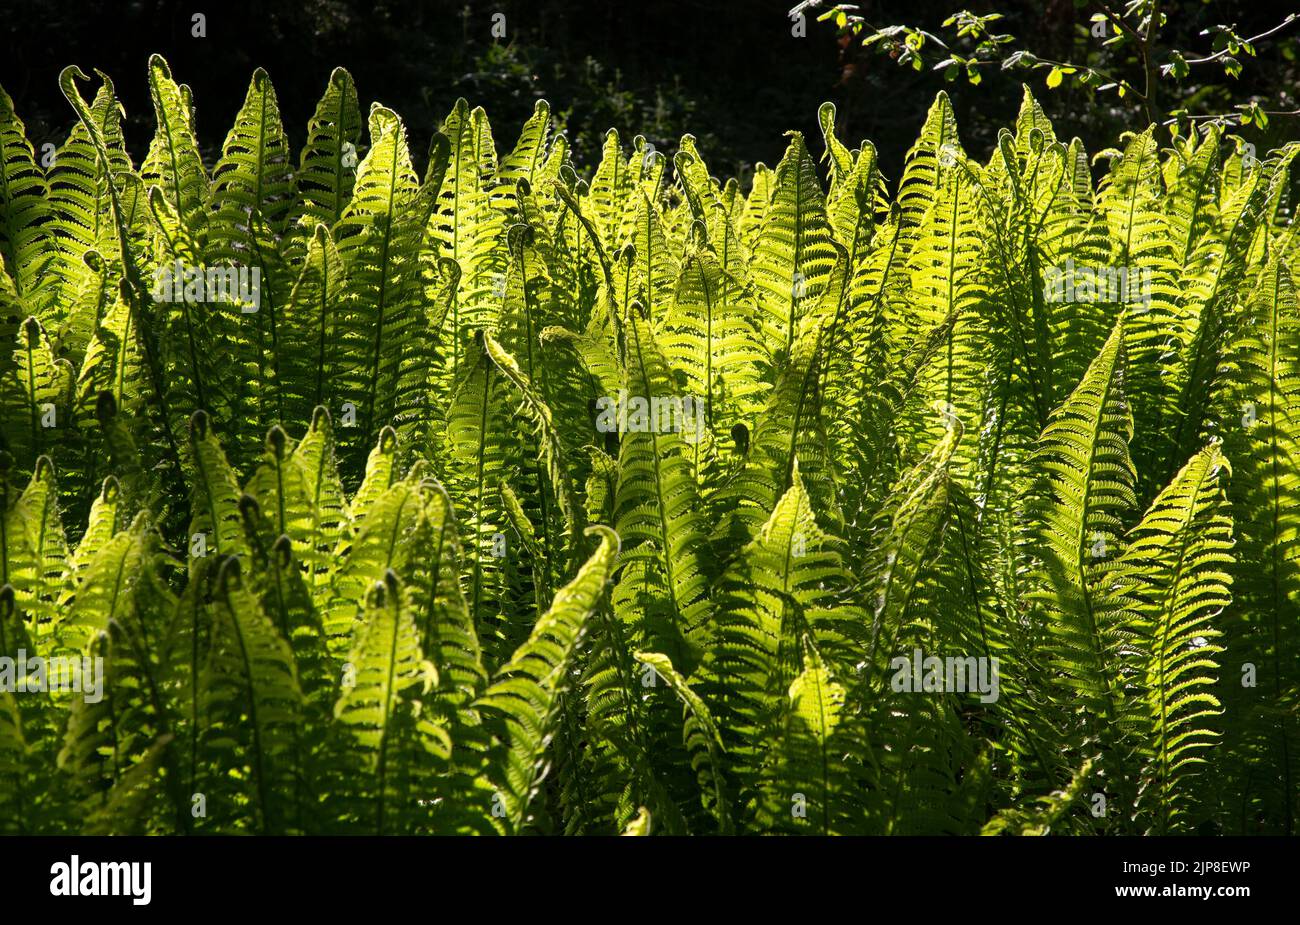 Hinterleuchtete Farne im schattigen englischen Garten Stockfoto